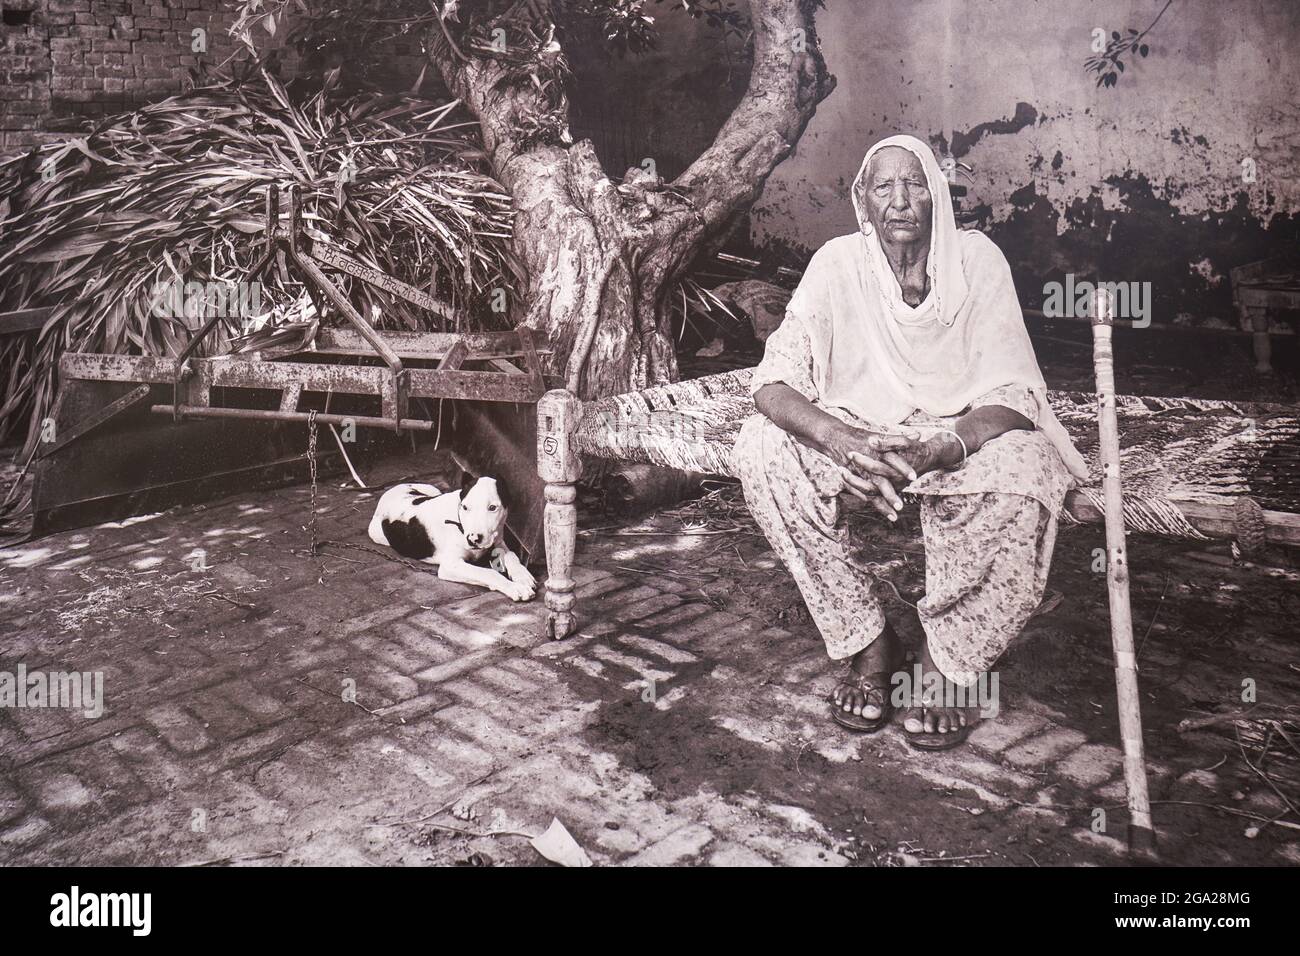 Portrait d'une femme indienne âgée et de son chien au Musée de la partition, hôtel de ville d'Amritsar, Inde; Amritsar, Punjab, Inde Banque D'Images